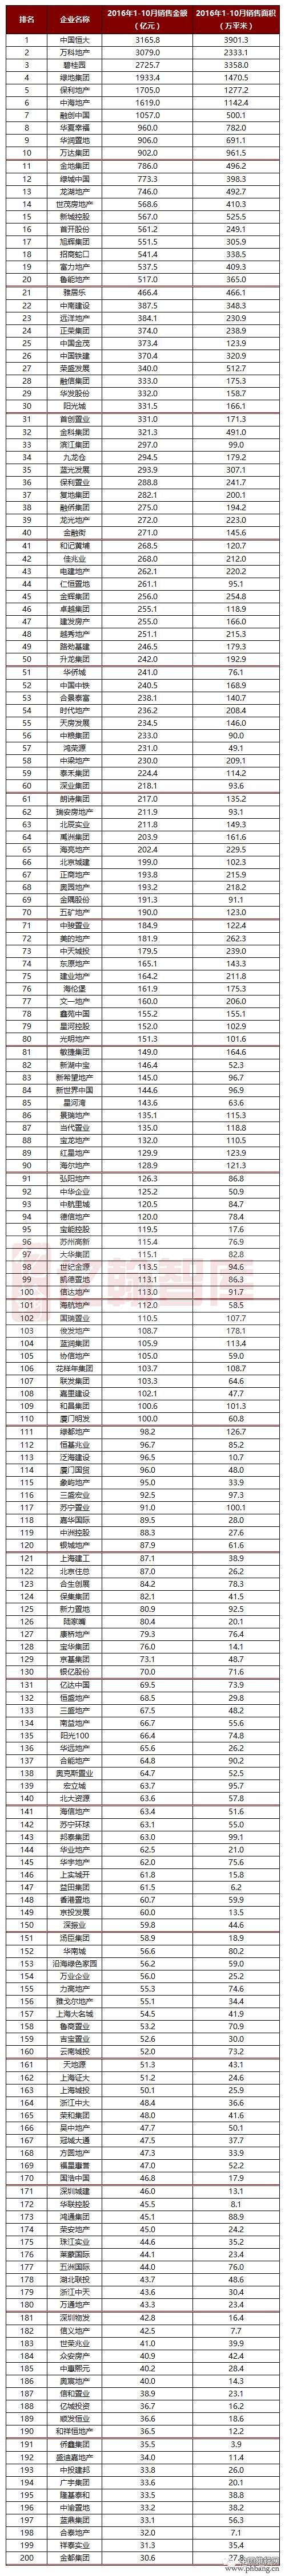 2016年1-10月中国典型房企销售业绩排行榜TOP200